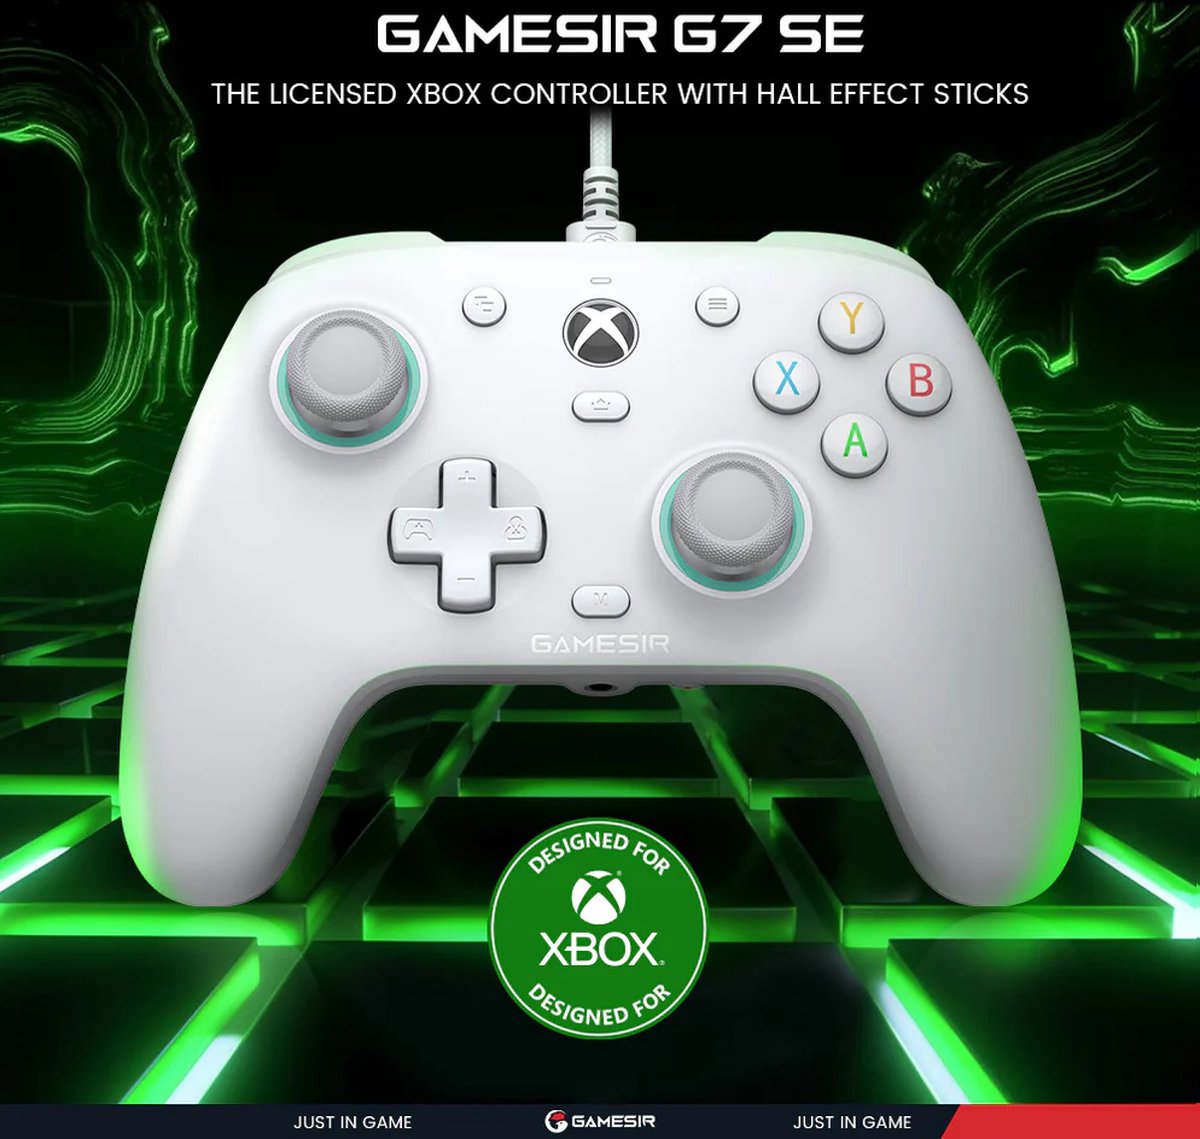 Gamesir G7 SE Pc & Xbox (officieel gelicenseerd!) bedrade controller, Hall Effect Joysticks (nooit meer stickdrift), Back buttons, Makkelijk programmeerbaar met Gamesir app